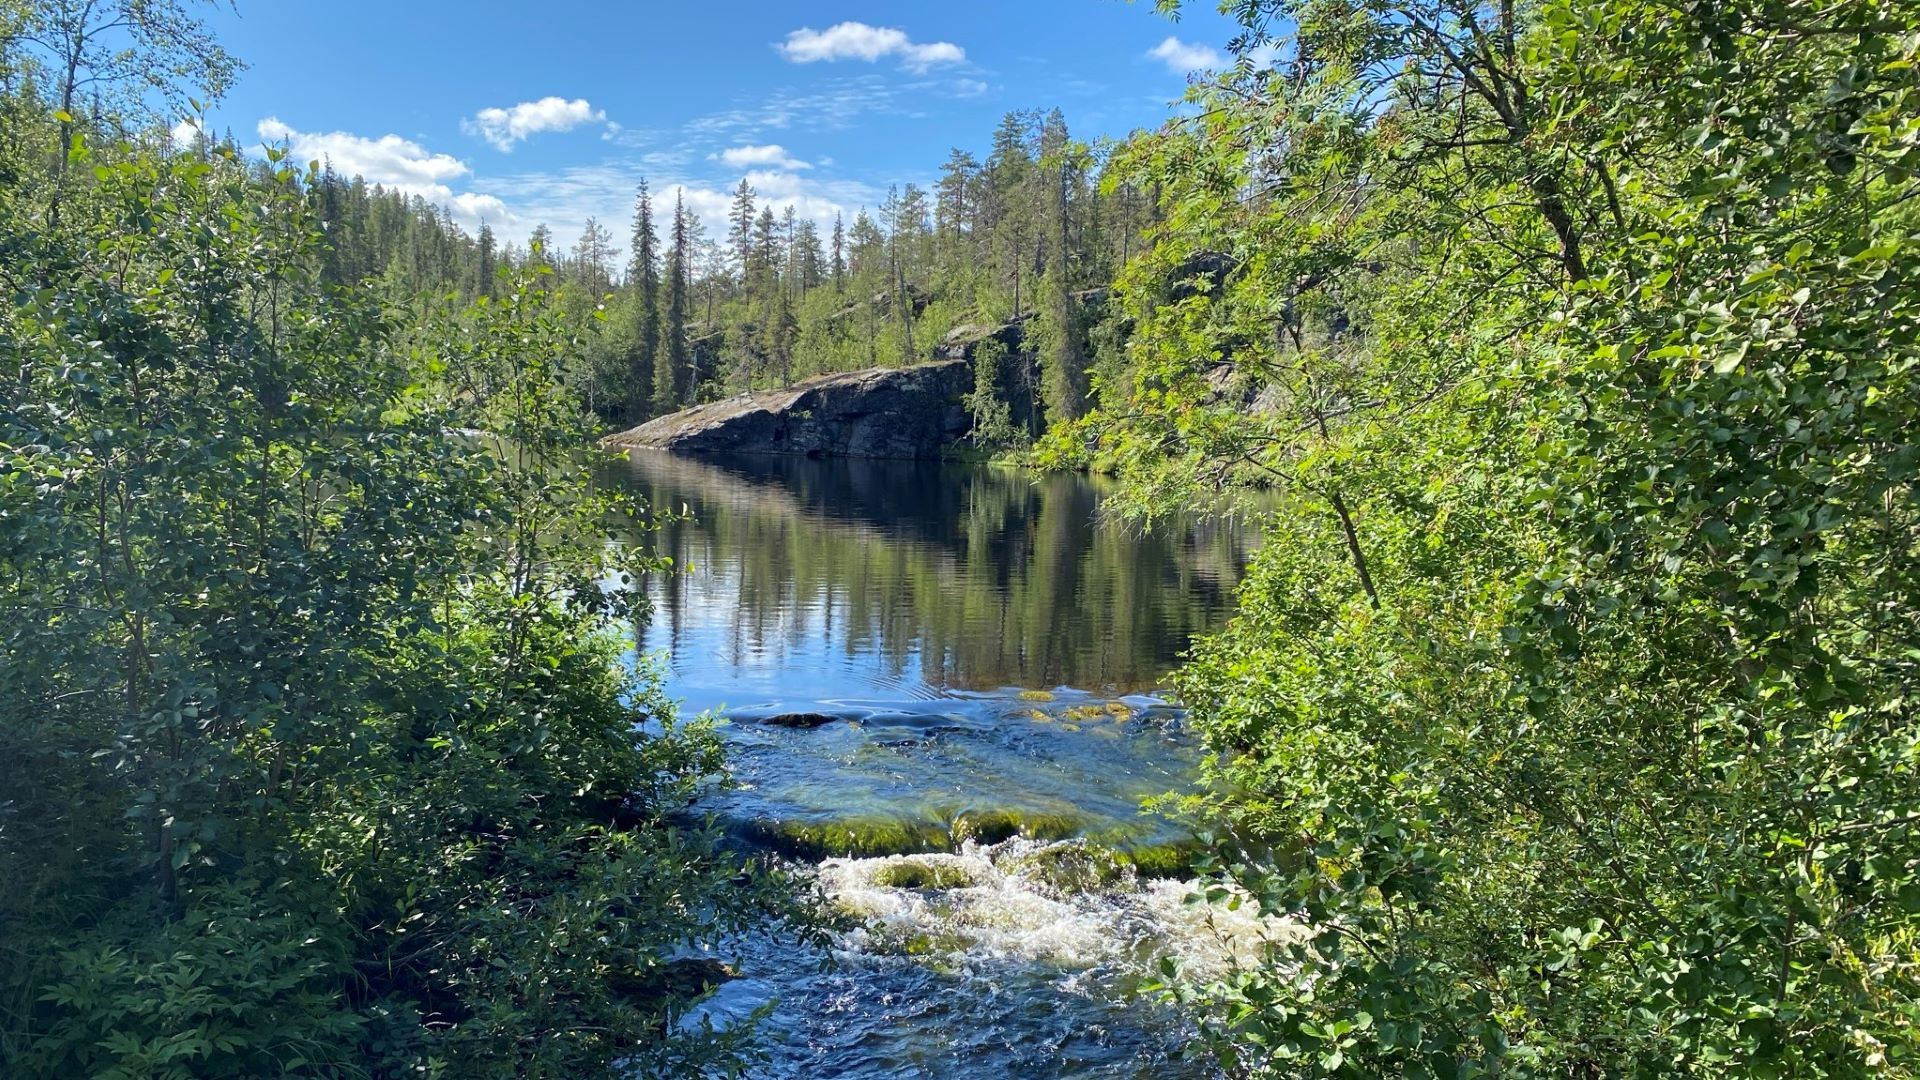 Pyhäjoki nature trail in Pallas